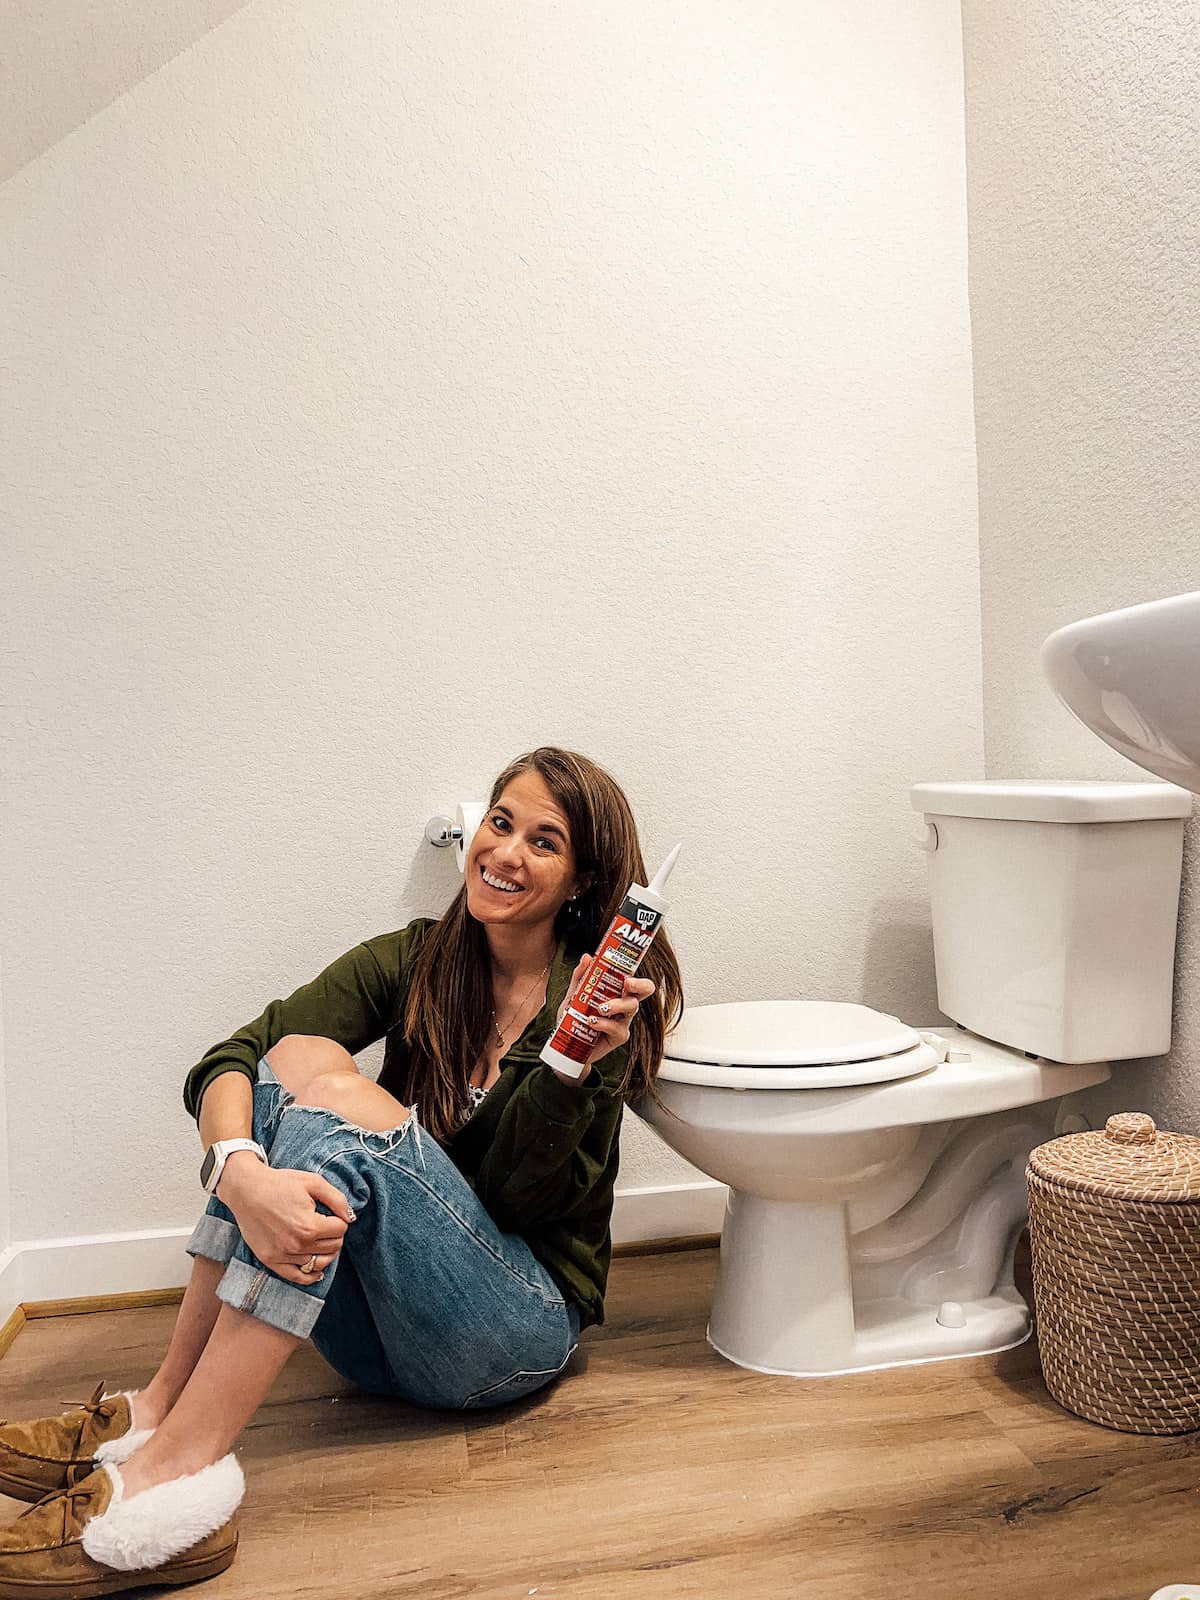 How to Caulk Around the Toilet